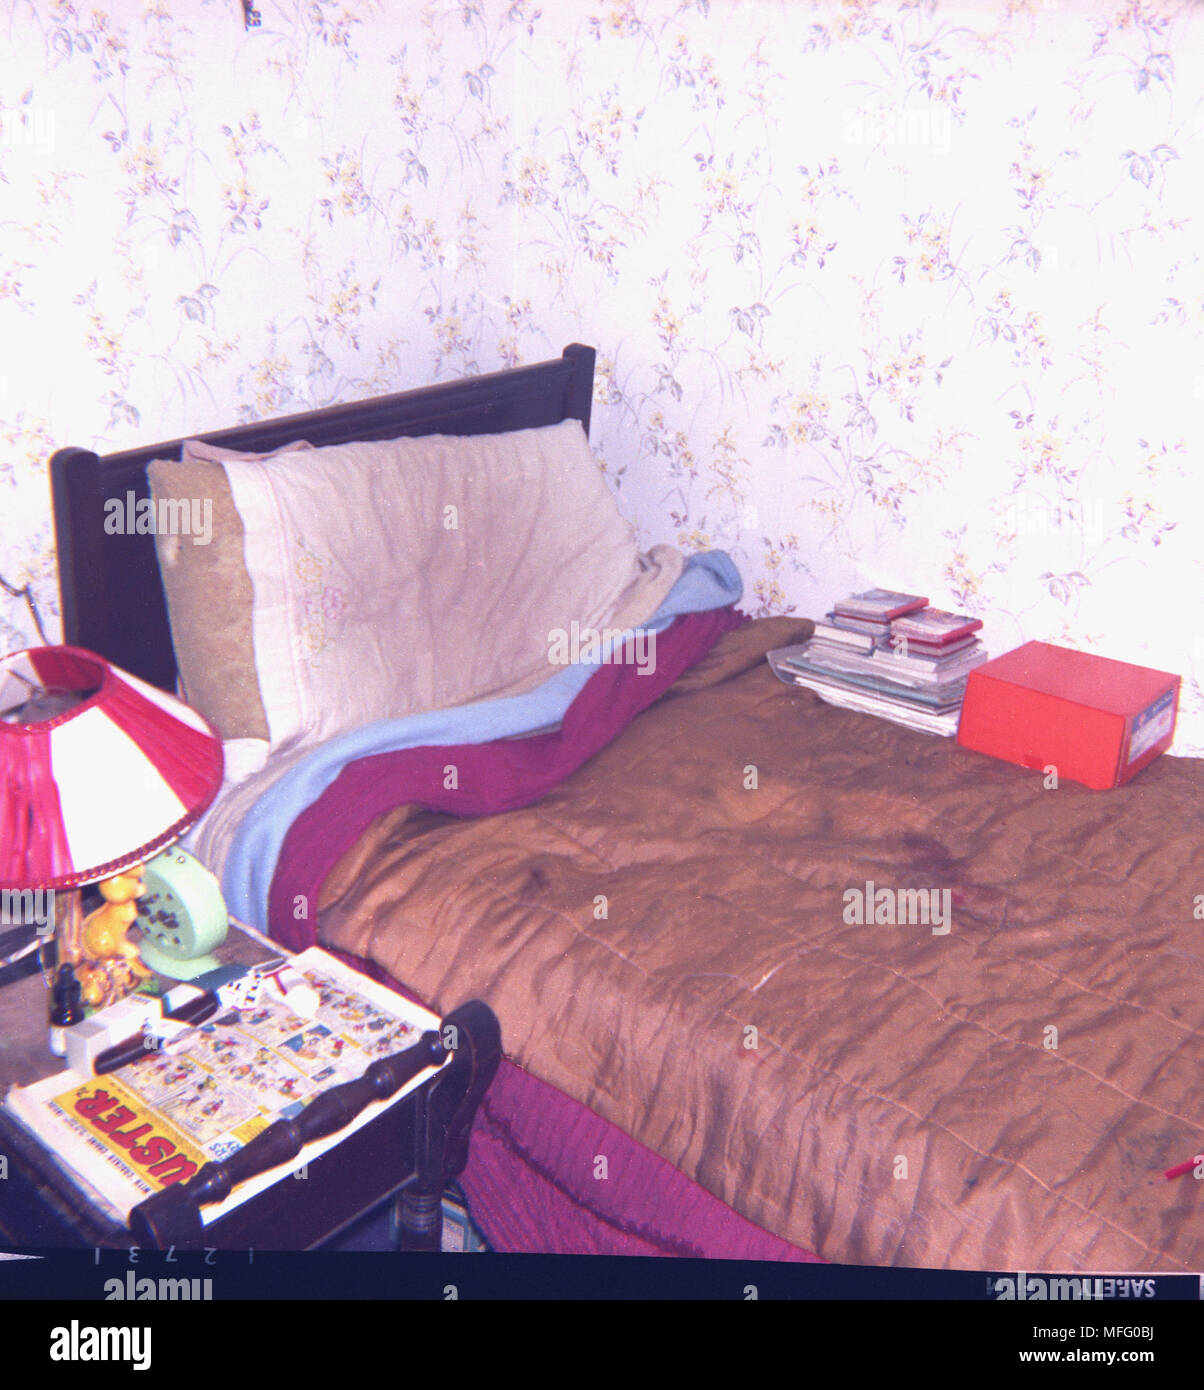 1970 La imagen muestra un desaliñado, desordenado y cama individual en una esquina de la habitación, con una manta marrón brillante sobre ella, y póngalo con una Buster comic sobre la mesita de noche, Inglaterra, Reino Unido. Foto de stock